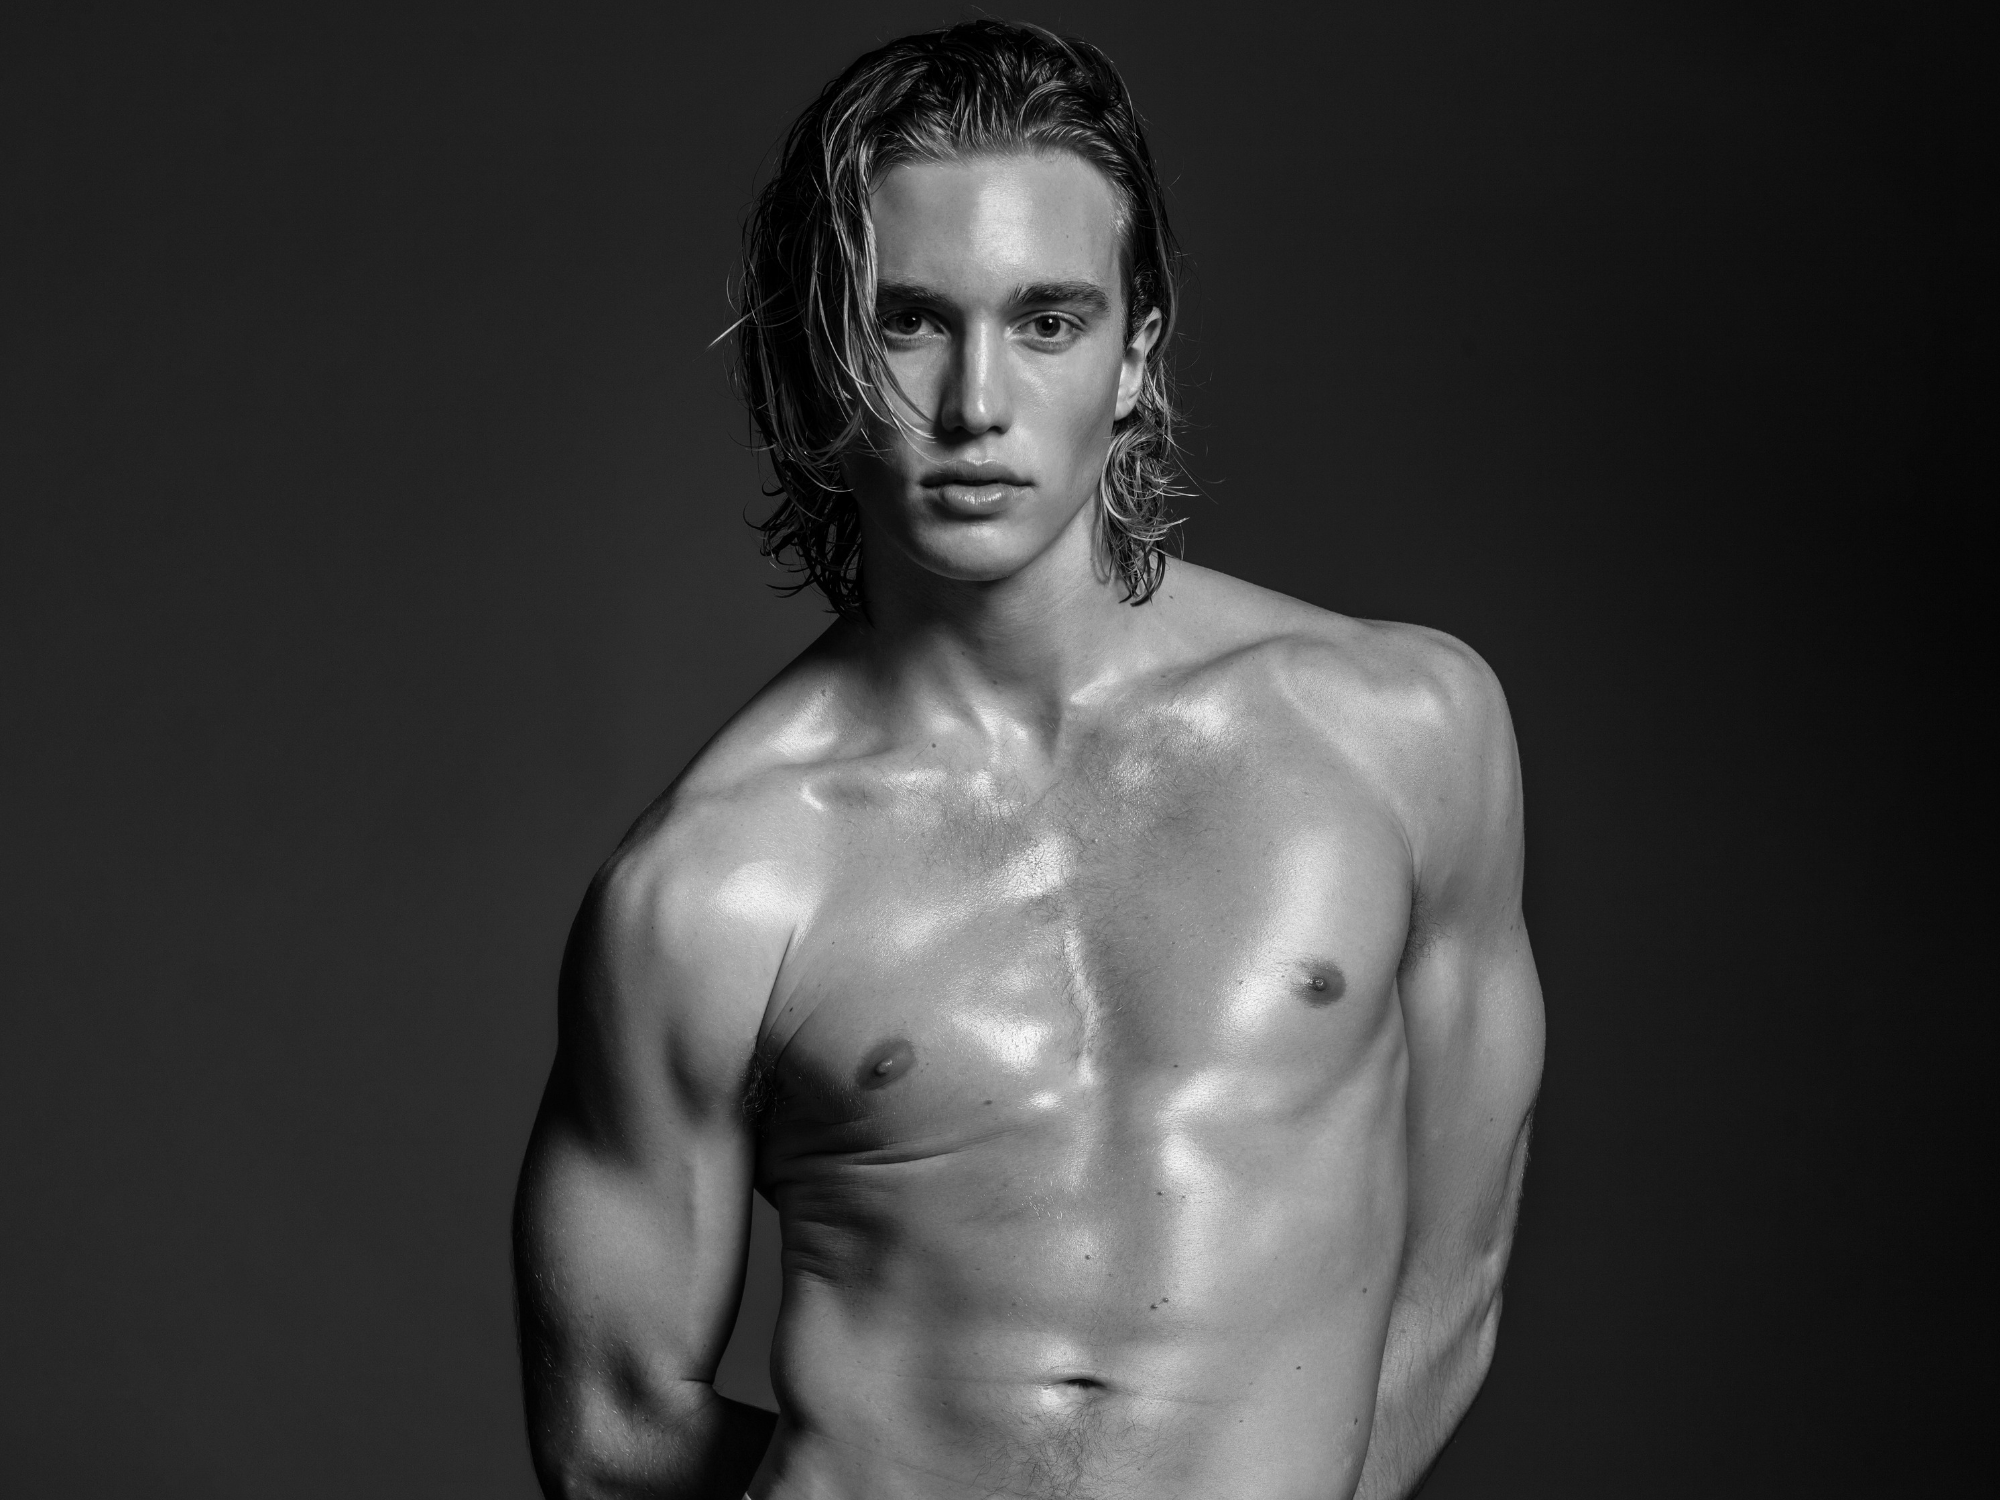 Untitled design 2 - sport, slider - FACETIME - male model, Calvin Klein, Body Issue - FACETIME